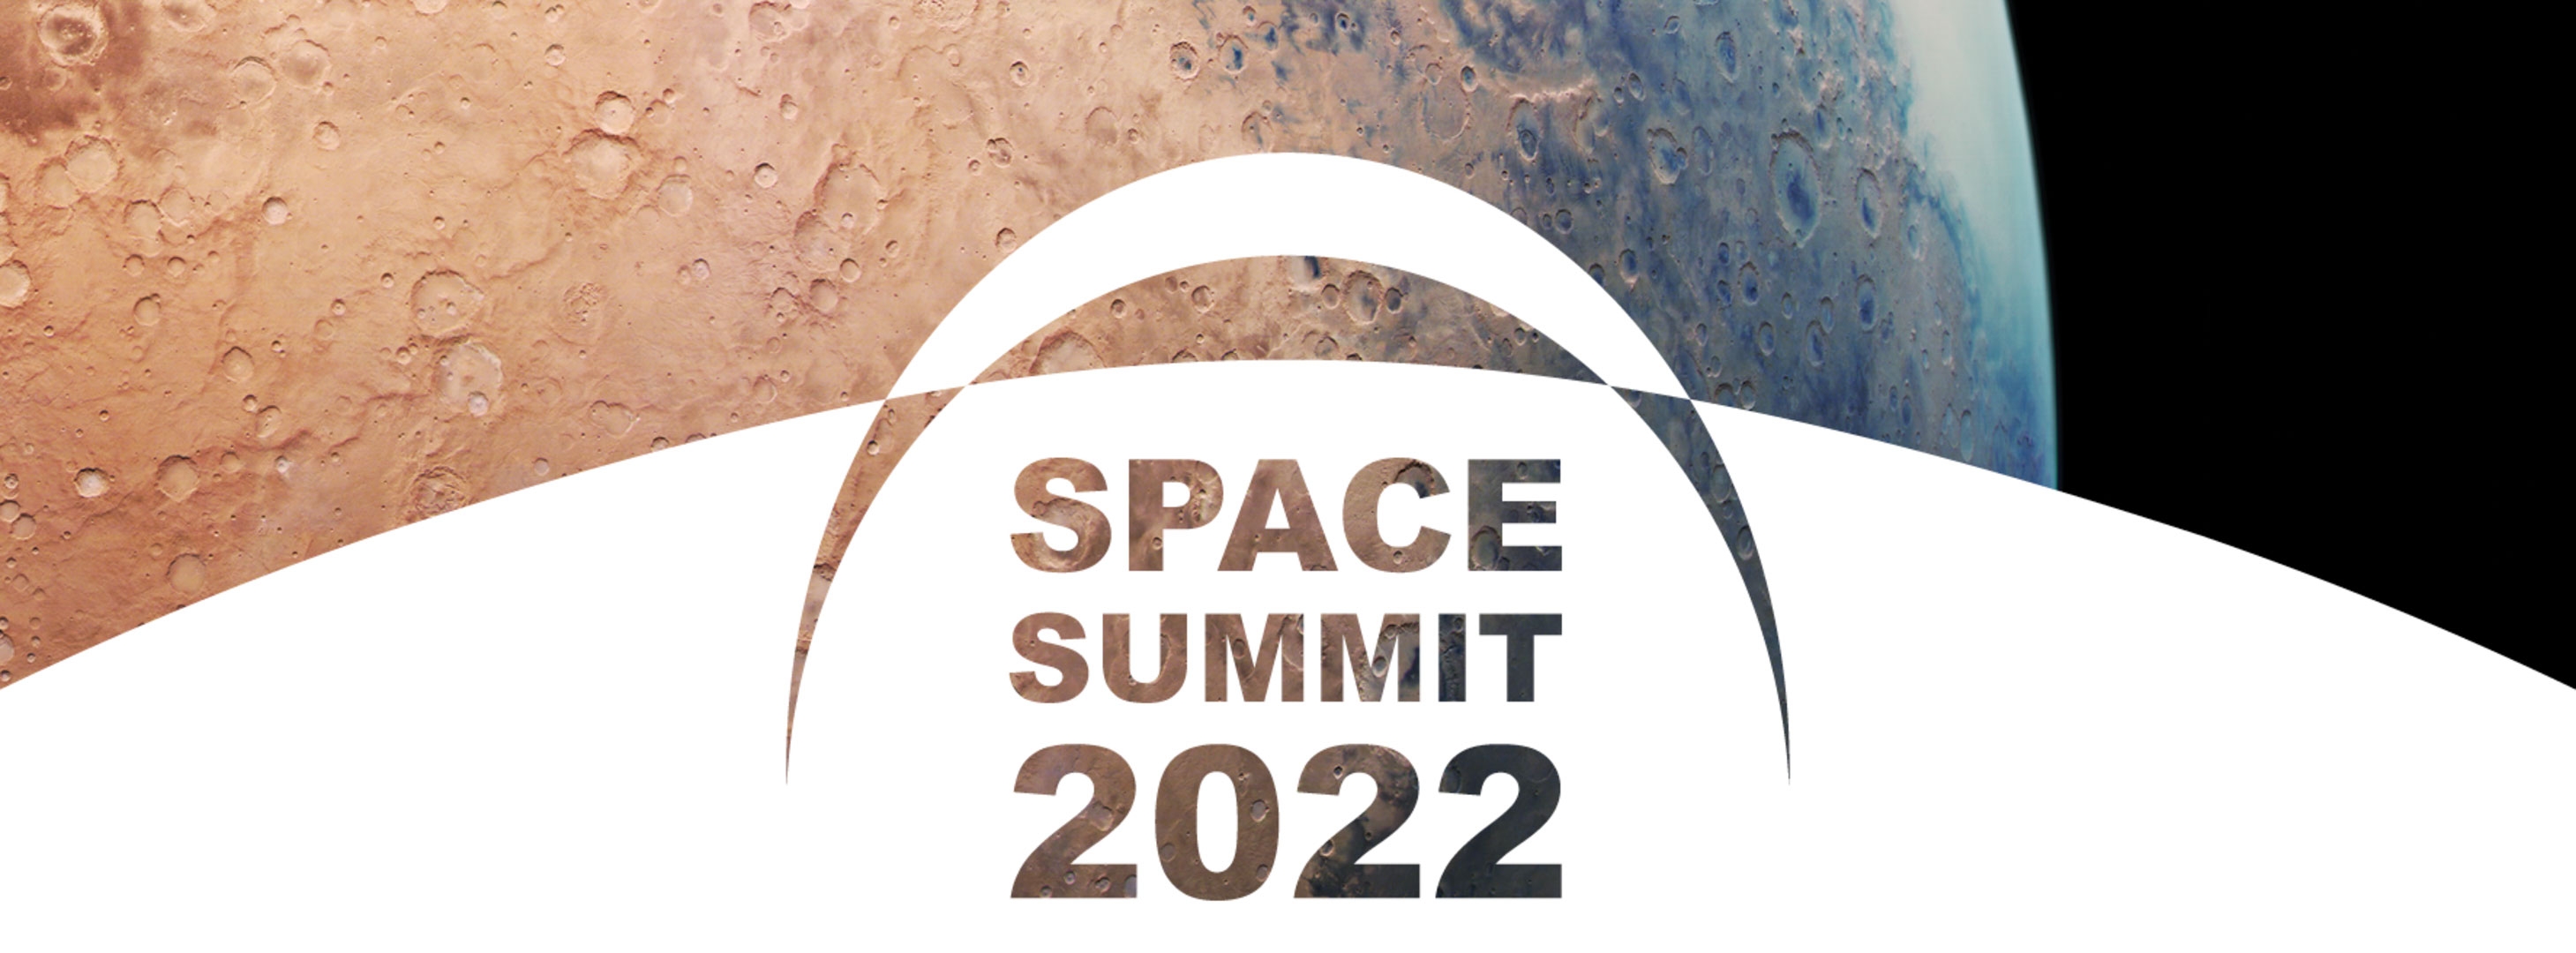 is_space_summit_2022.jpg